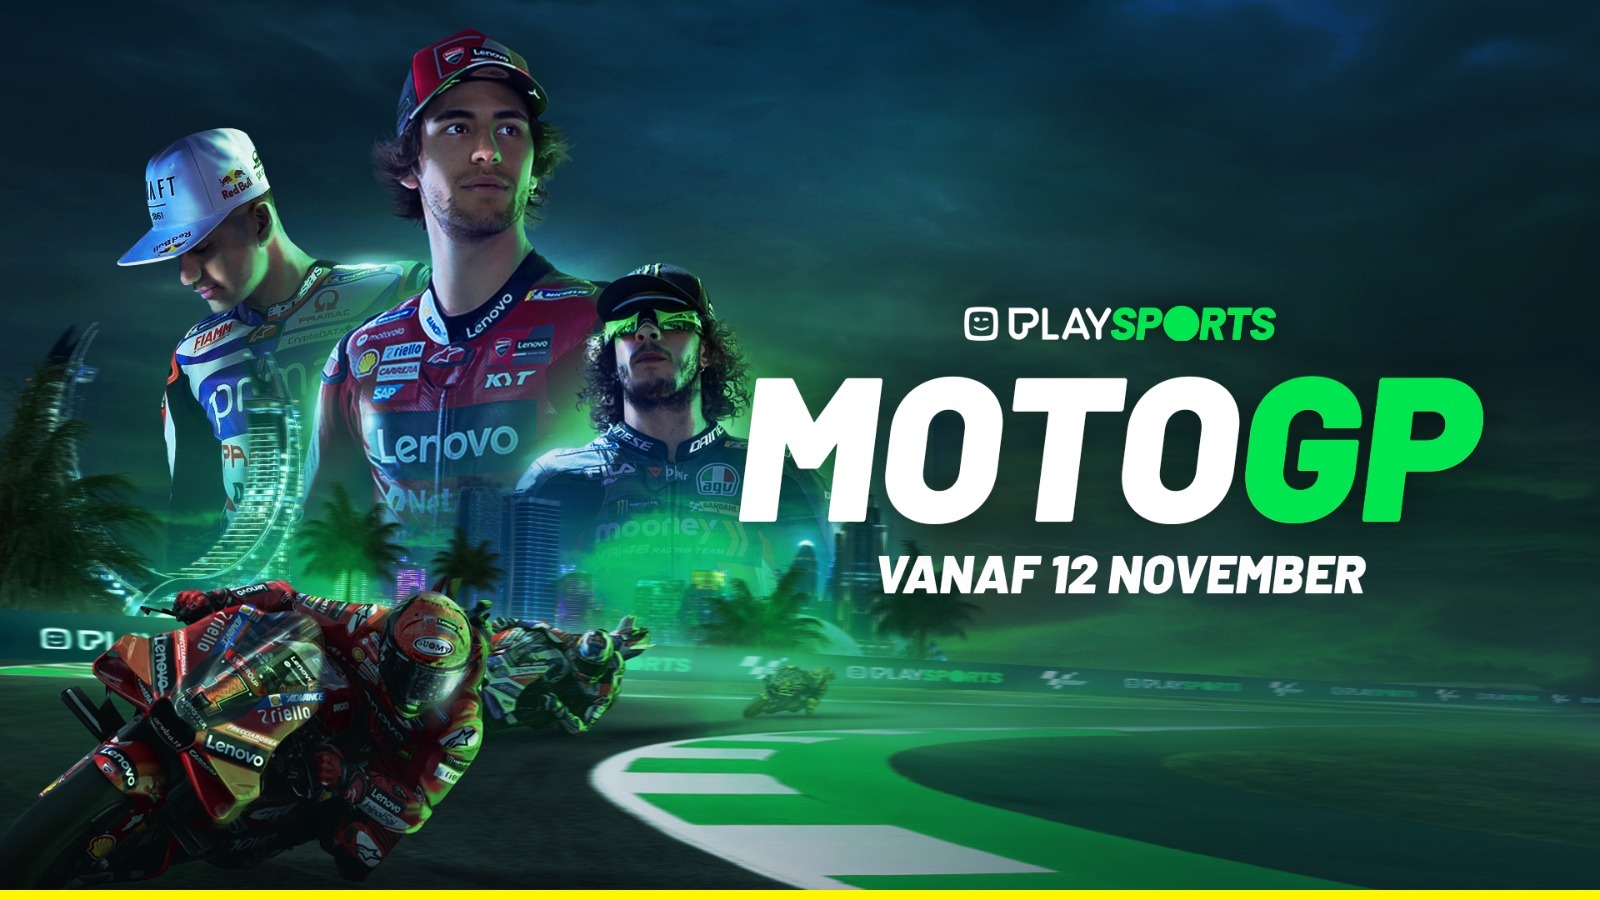 Emozionante resa dei conti della MotoGP in diretta su Play Sports!